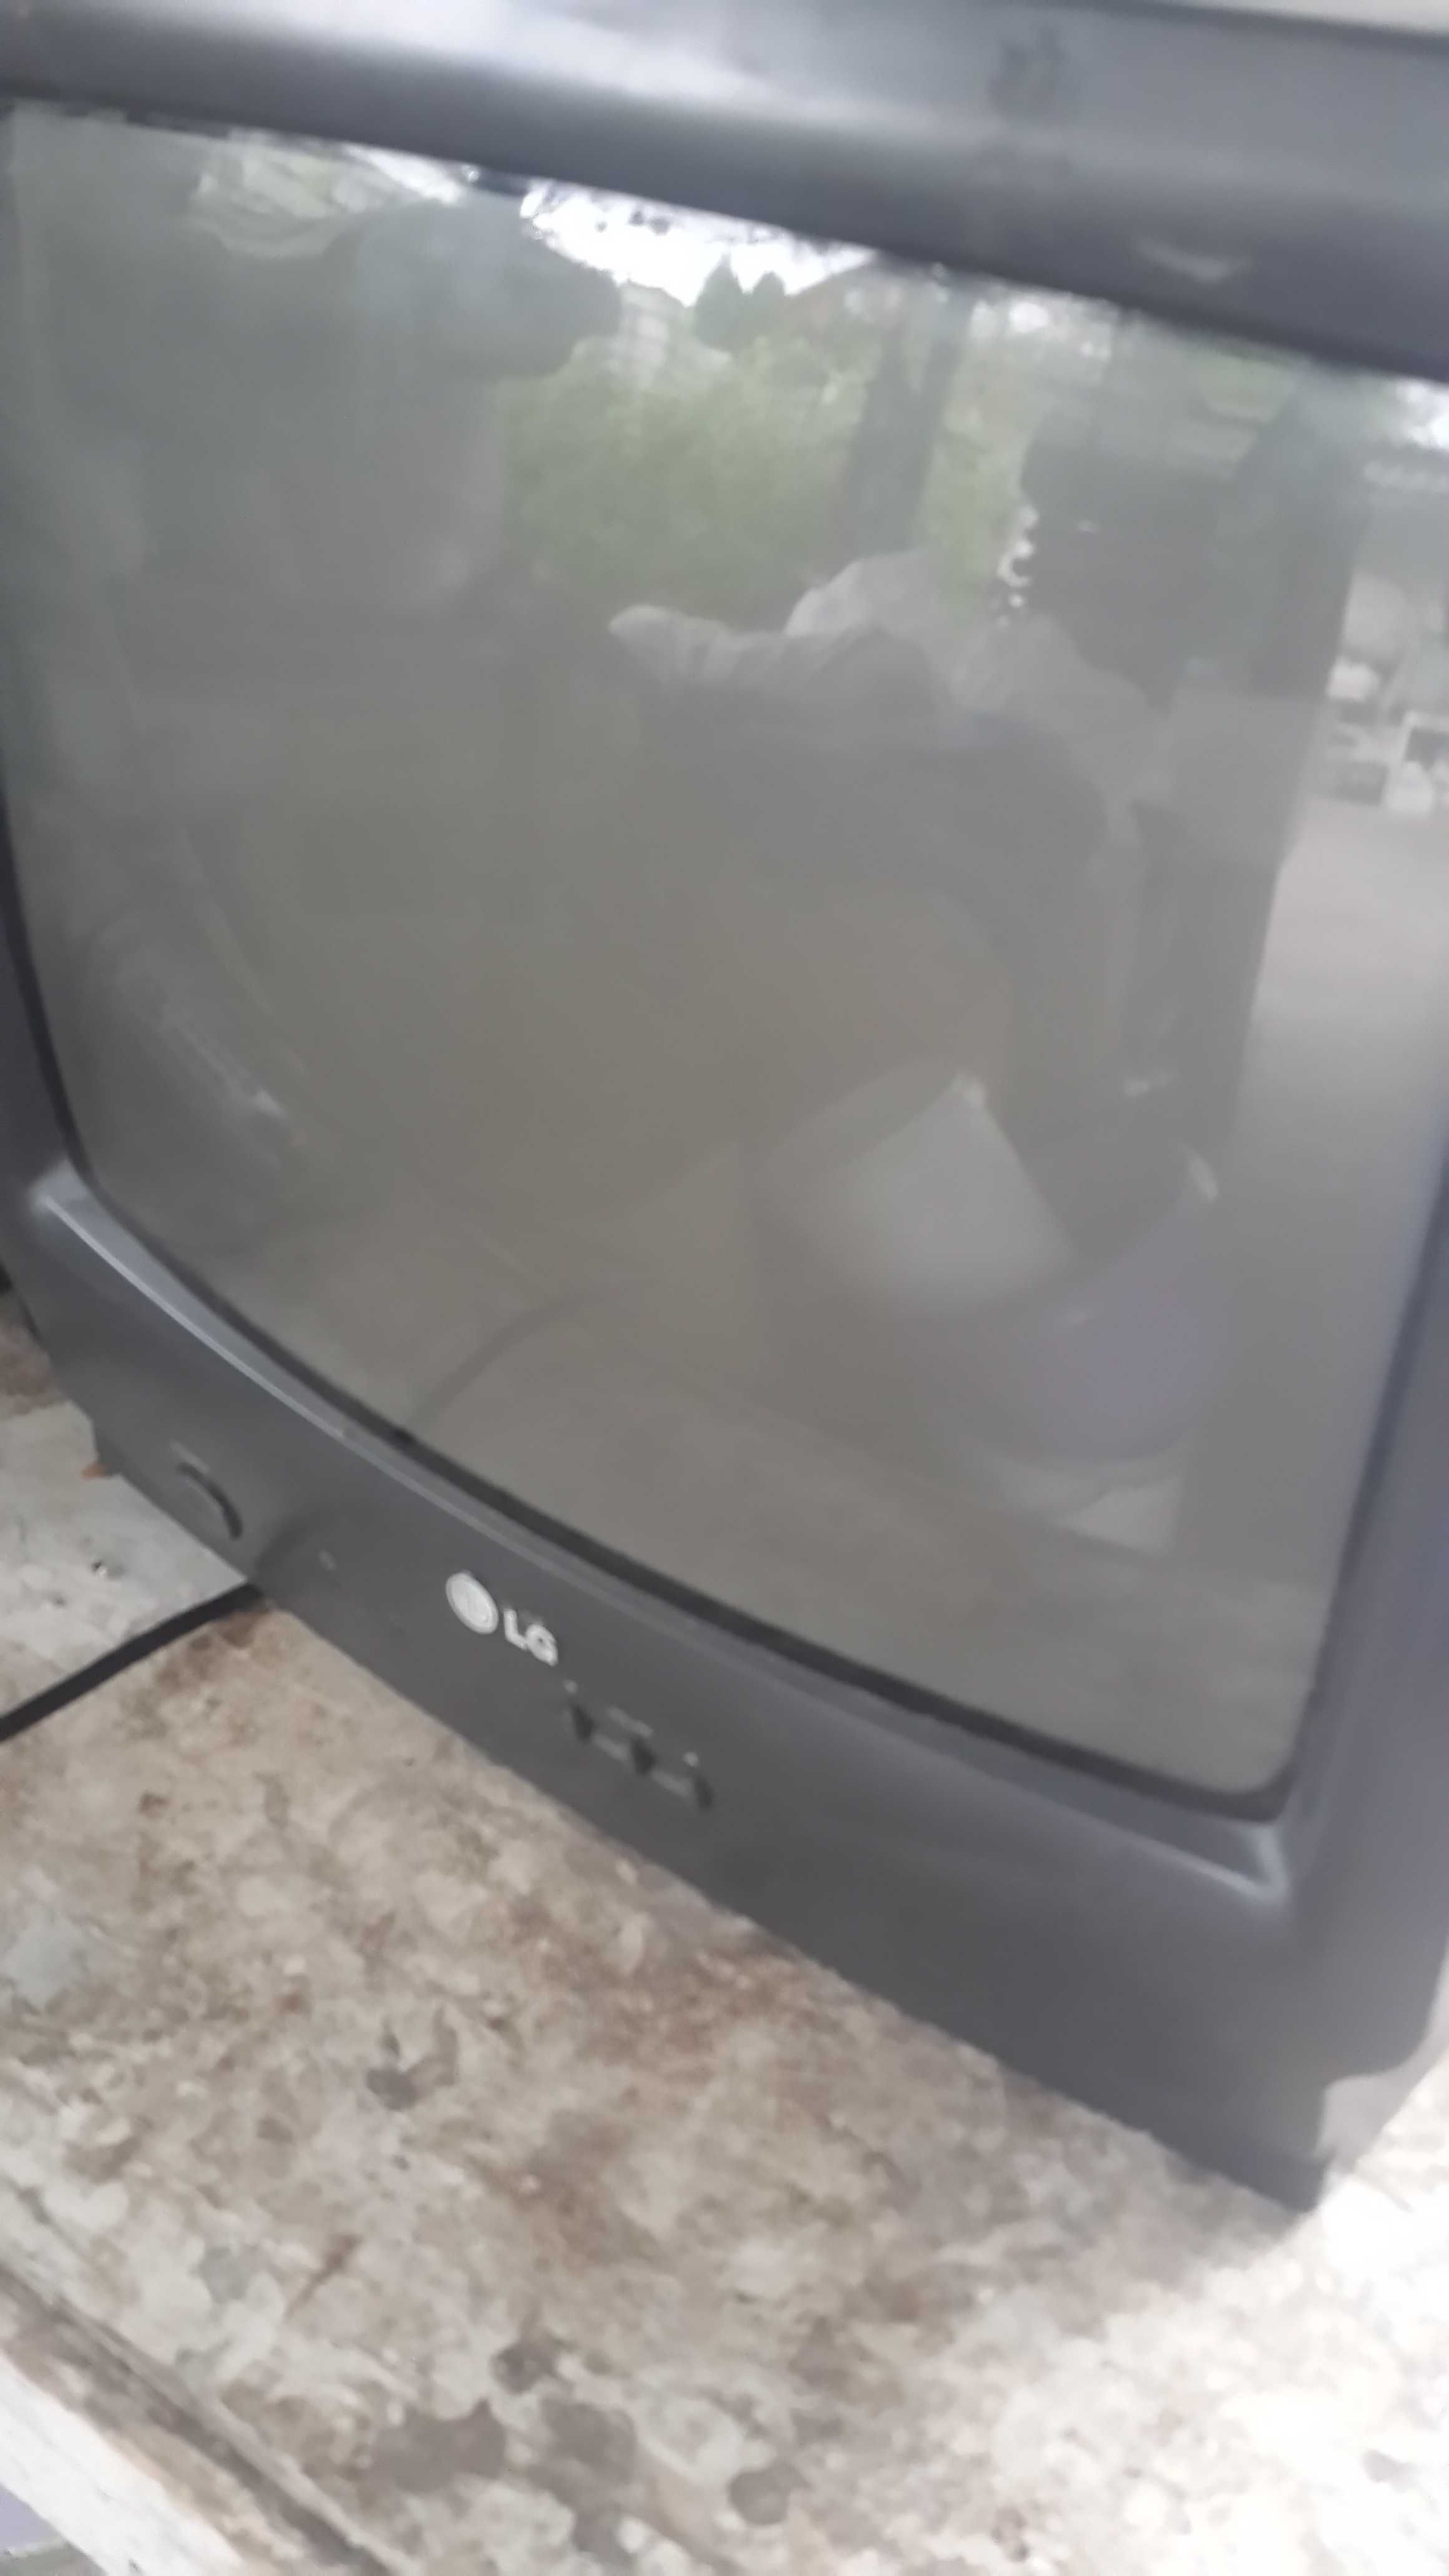 Телевизор цветной под ремонт или запчасти